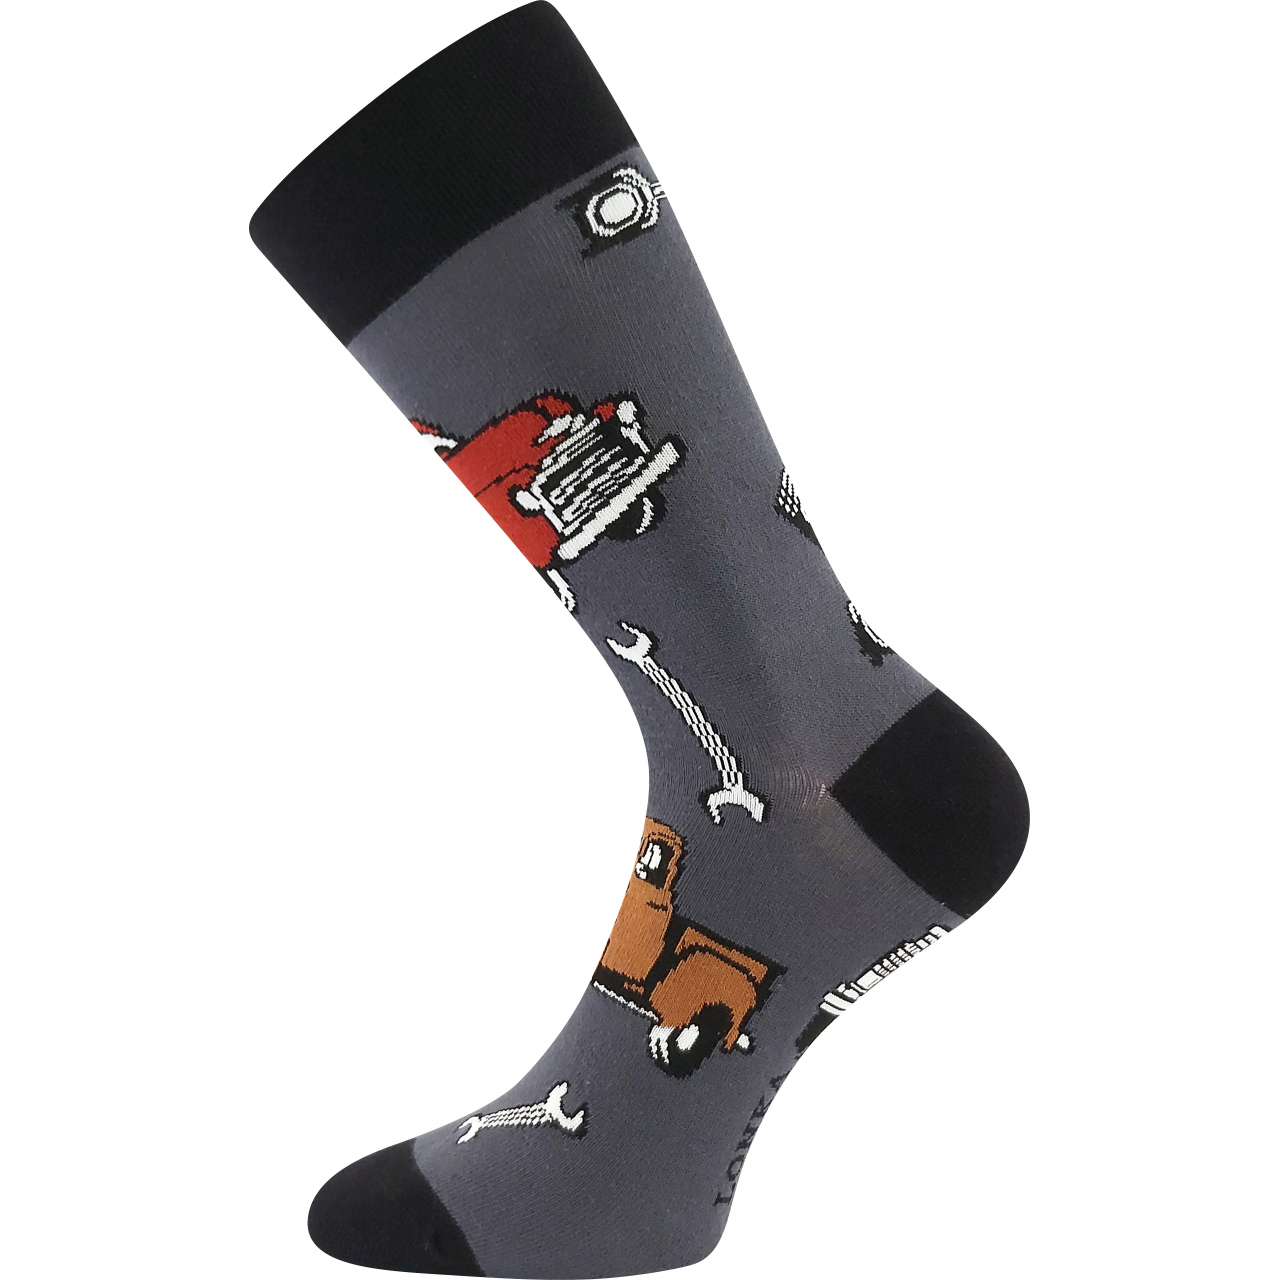 Ponožky pánské trendy Lonka Depate Auta - šedé-černé, 39-42